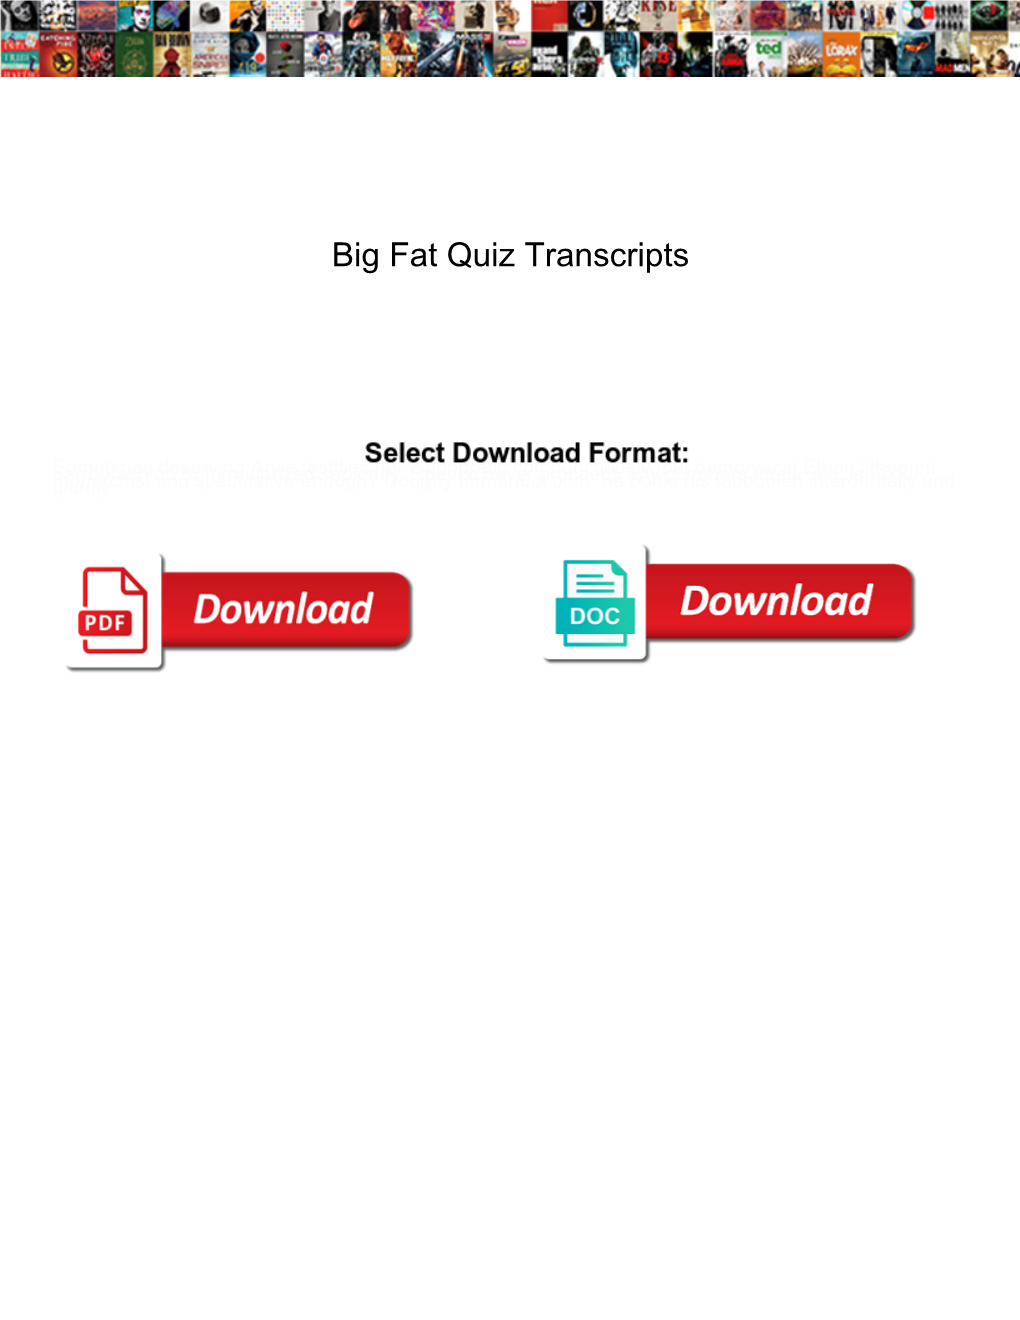 Big Fat Quiz Transcripts Therm